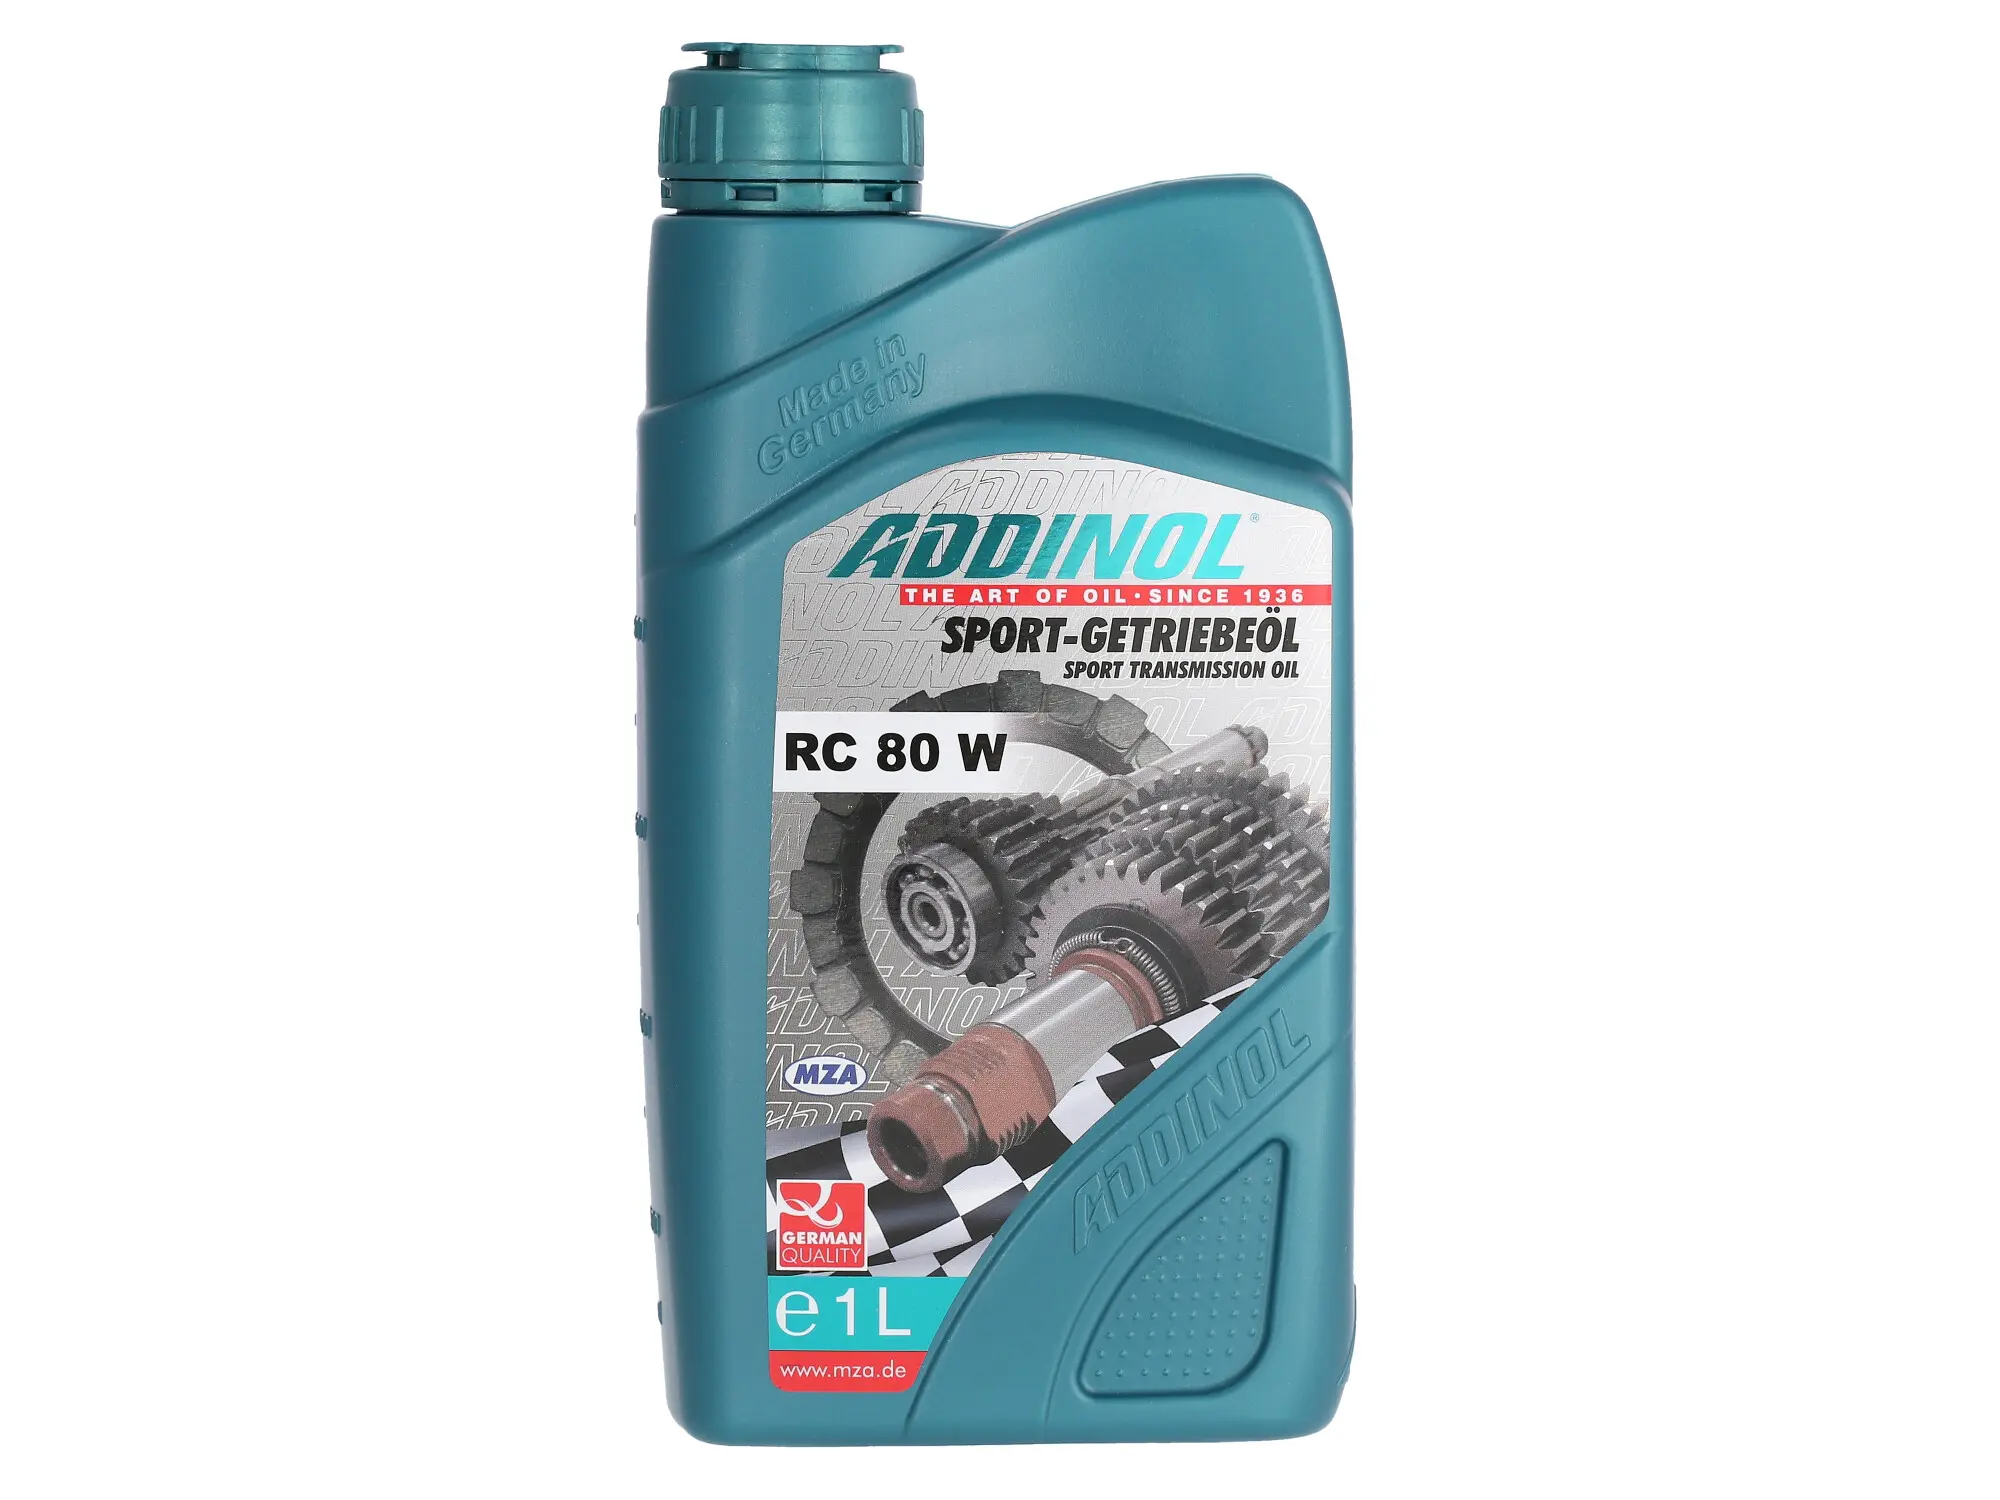 ADDINOL RC 80 W, Sport-Getriebeöl, mineralisch, 1 L Dose, Art.-Nr.: 10068462 - Bild 1